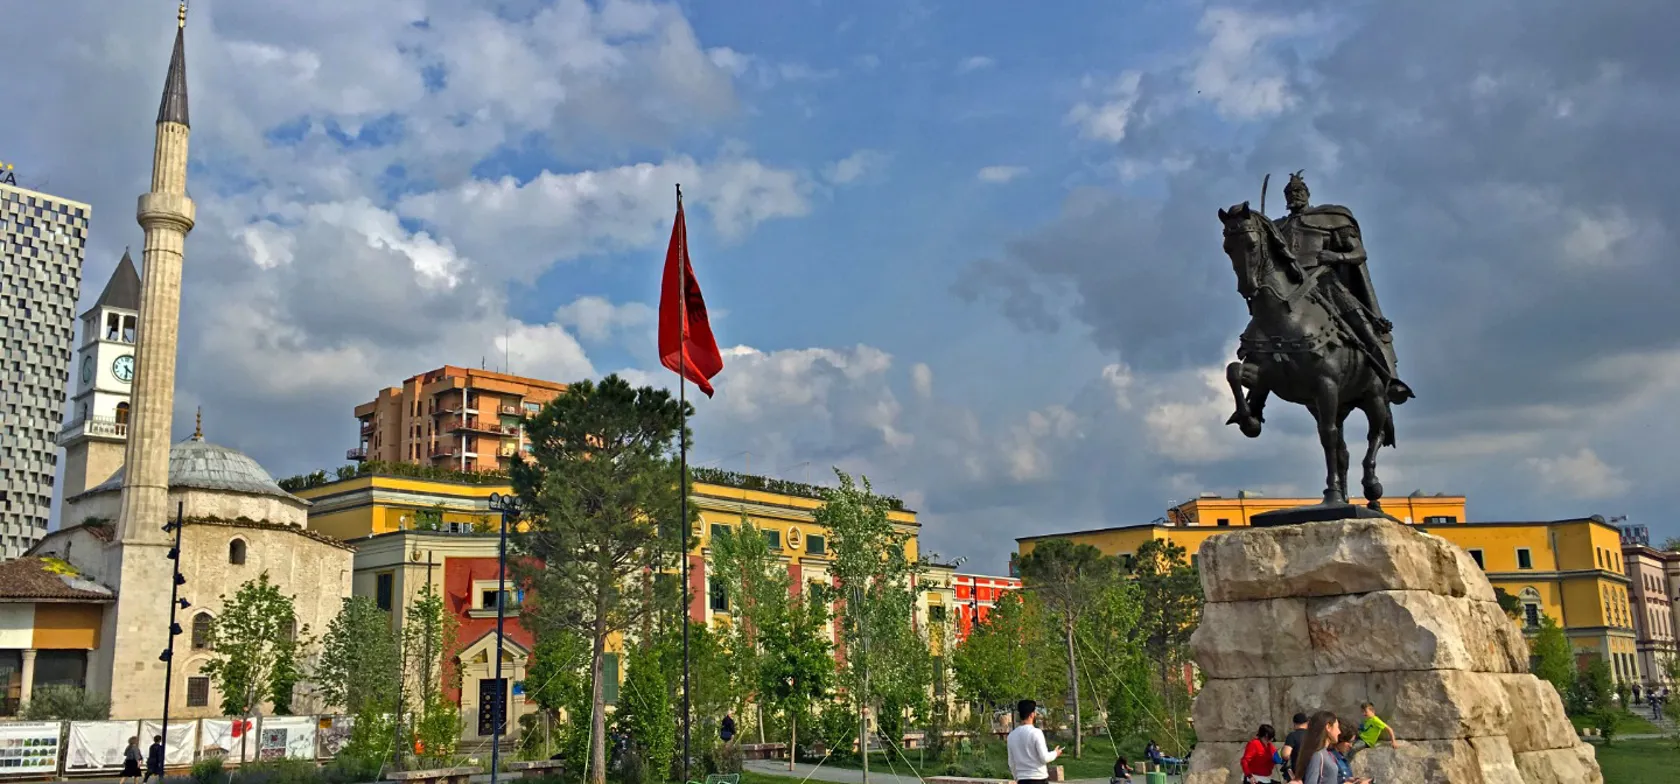 Statuen af den albanske nationalhelt Skanderbeg troner midt på pladsen af samme navn i Tirana. Foto Lise Blom